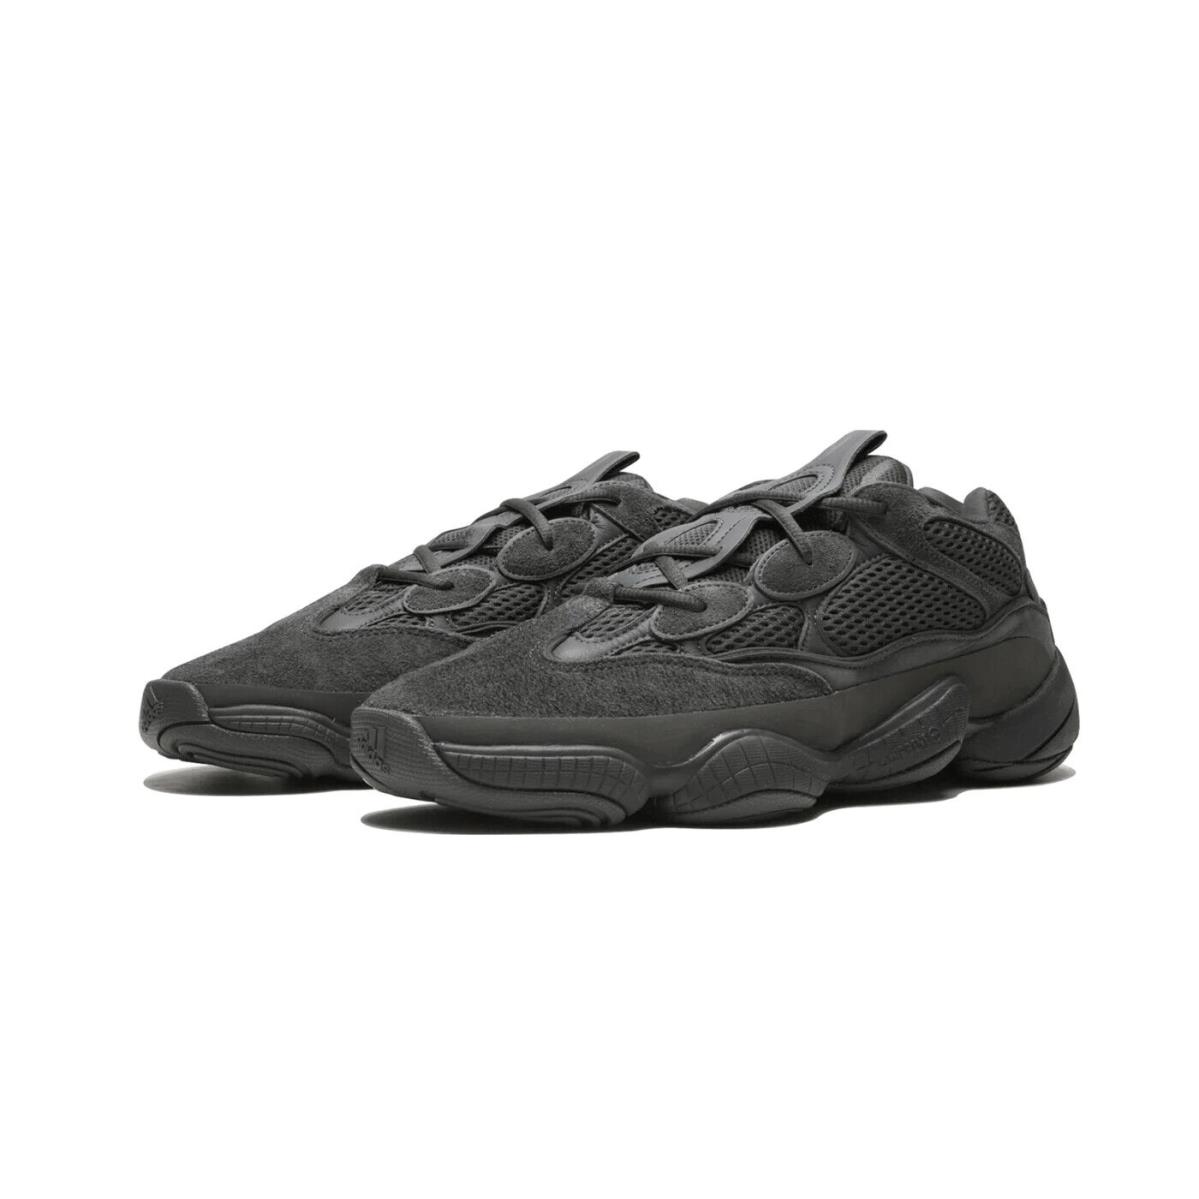 Mens Adidas Yeezy 500 `utility Black` Fashion Sneakers F36640 - Black